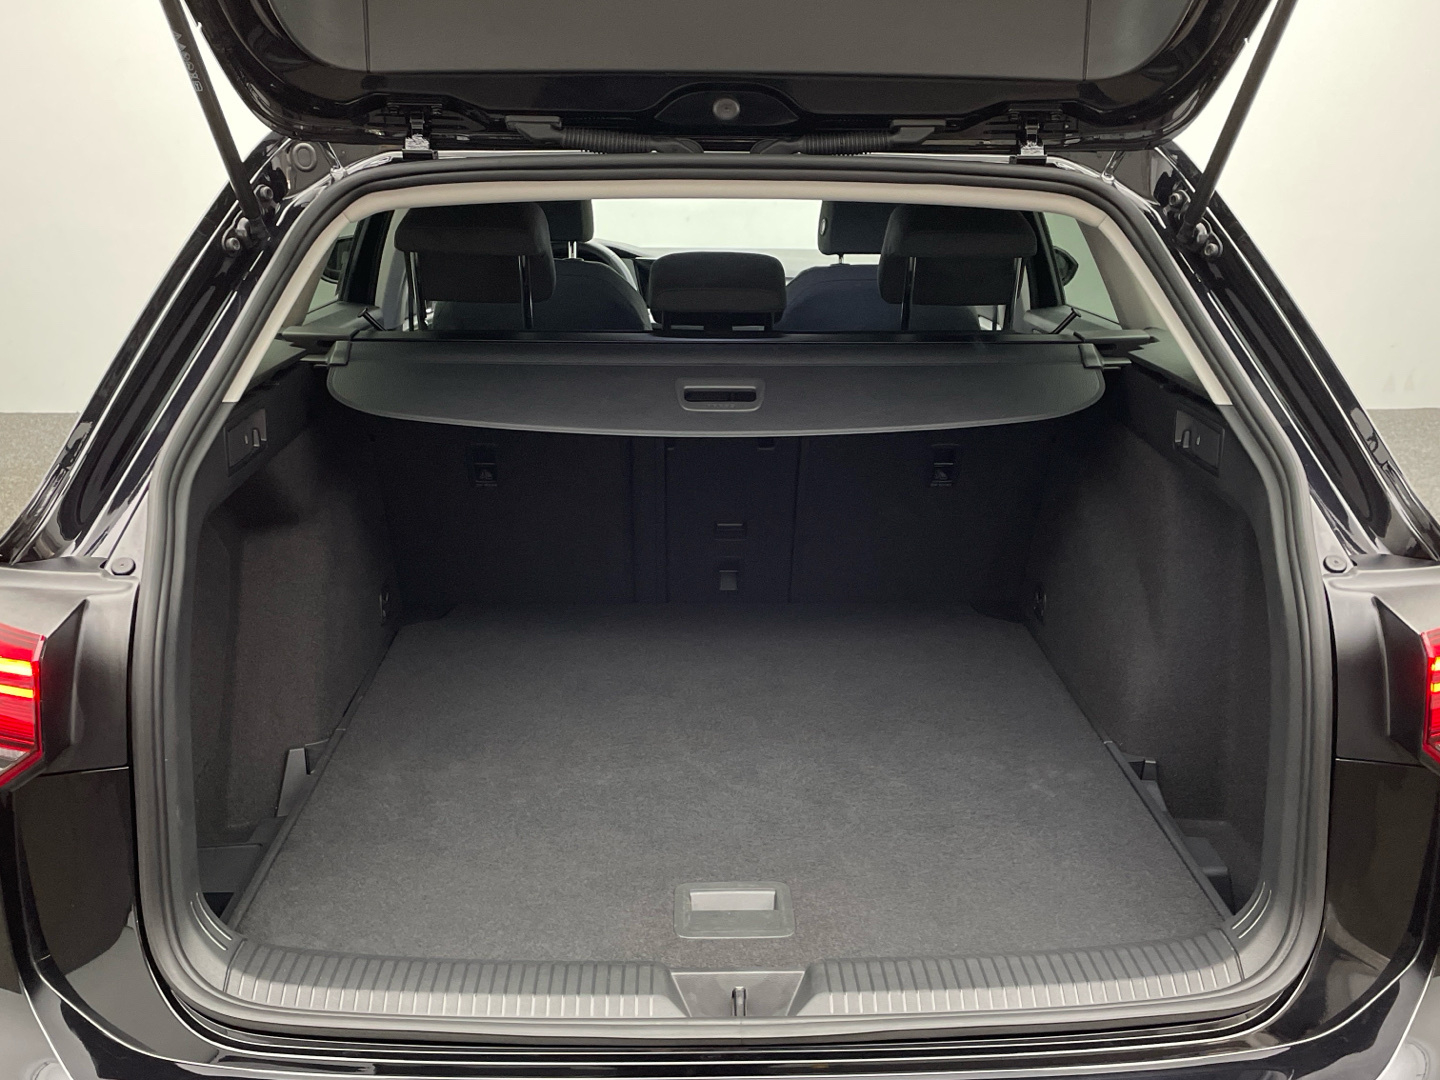 VW Golf VIII Variant Life 2.0 TDI Navi CarPlay LED 